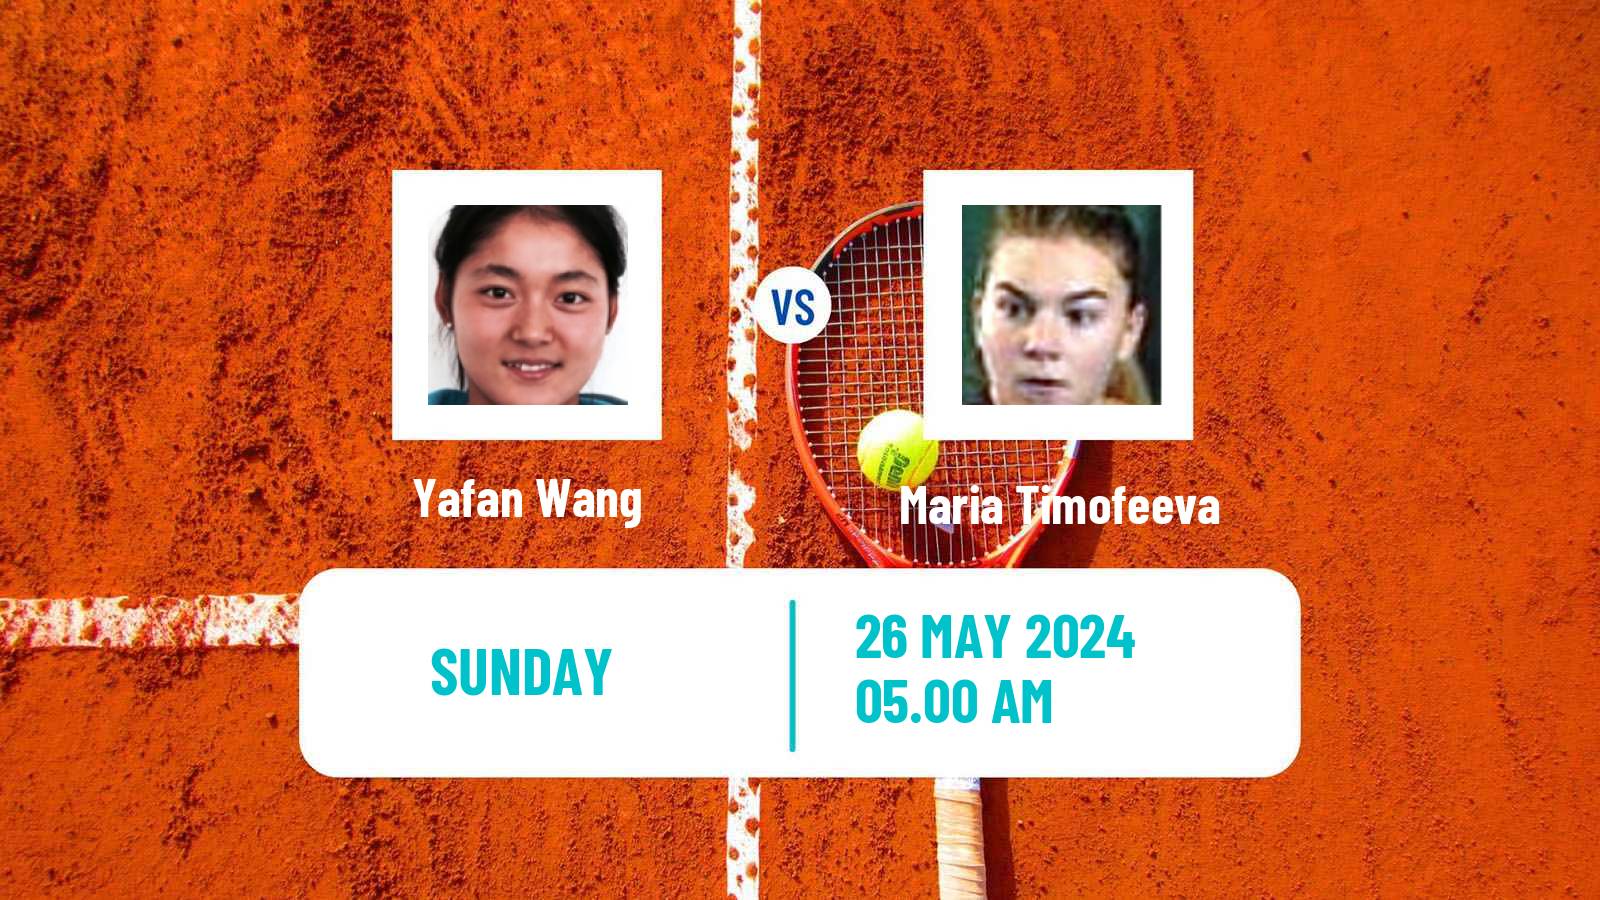 Tennis WTA Roland Garros Yafan Wang - Maria Timofeeva